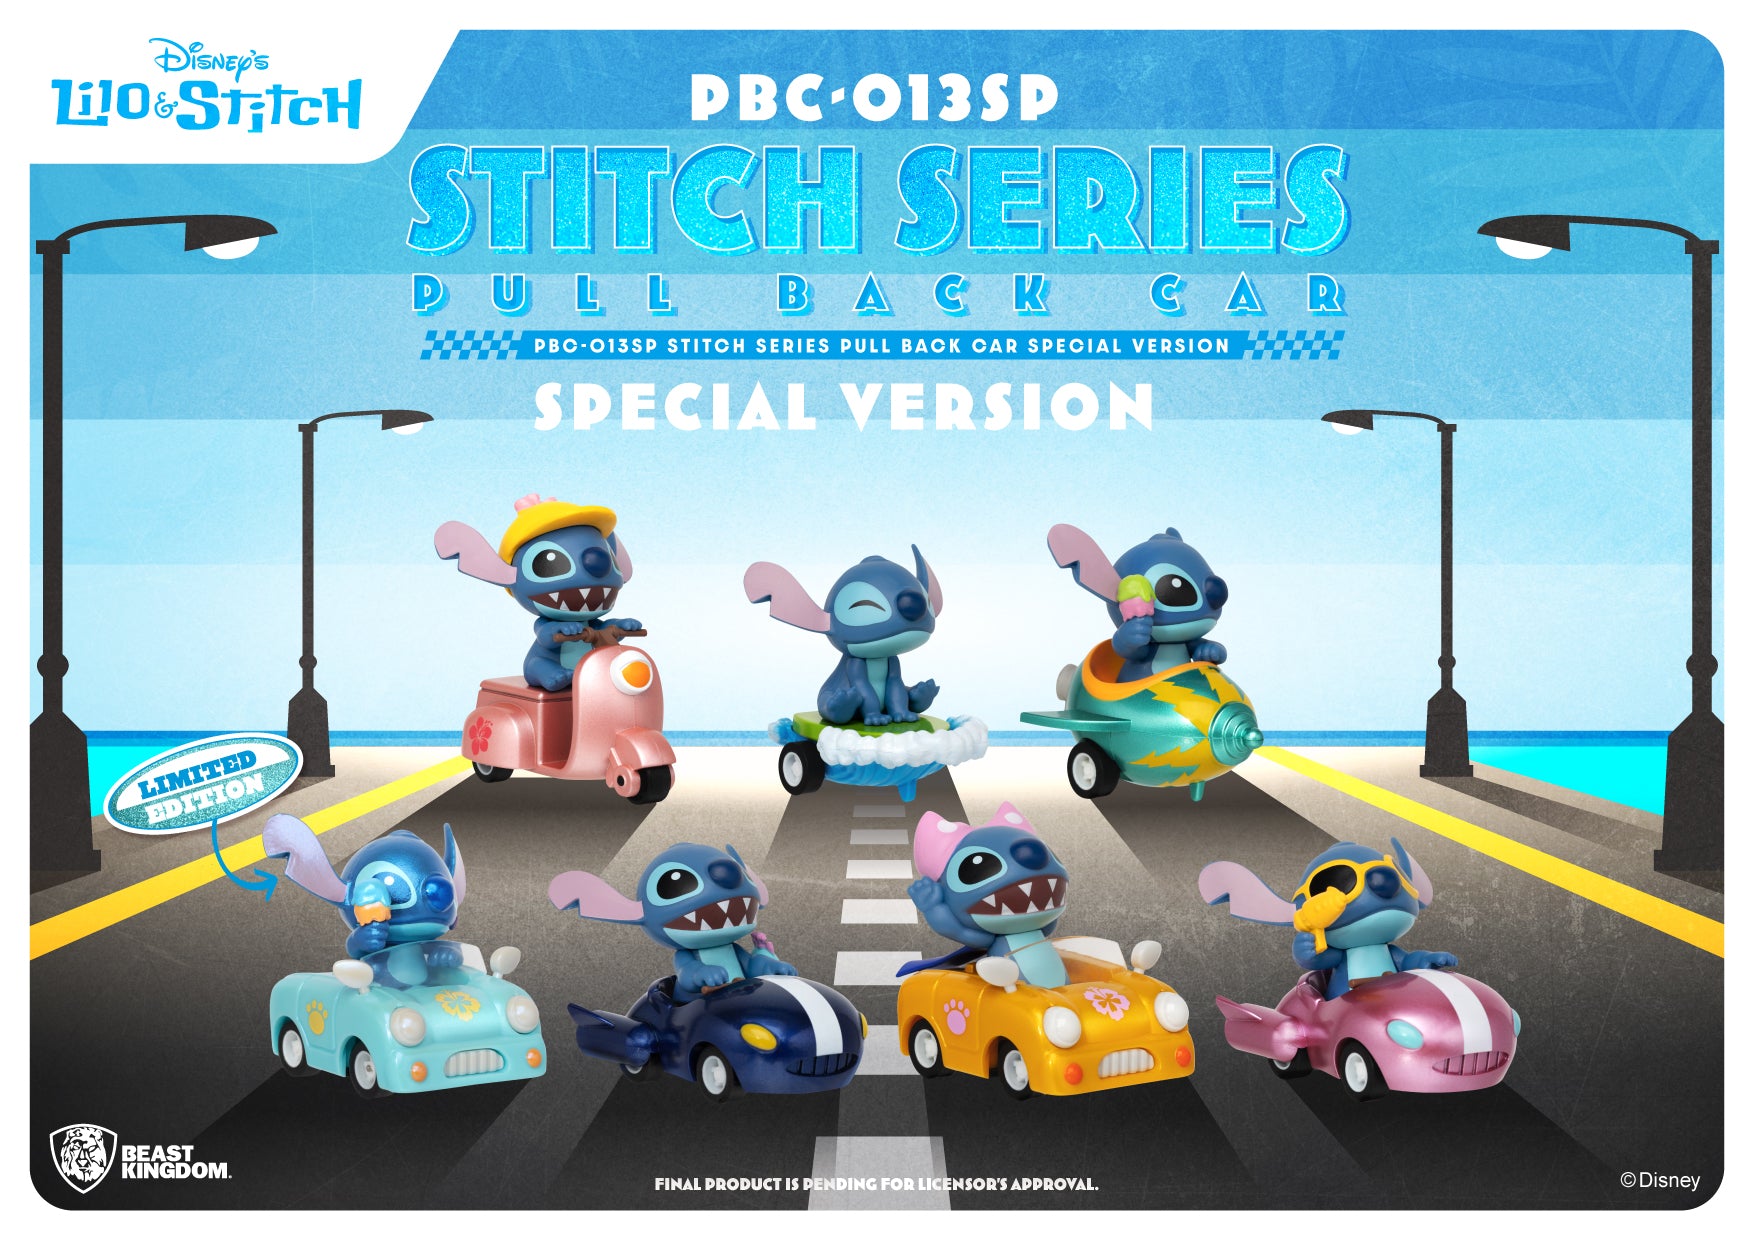 Beast Kingdom PBC-013SP Stitch Series Pull Back Car Special Version Bl –  Beast Kingdom SEA